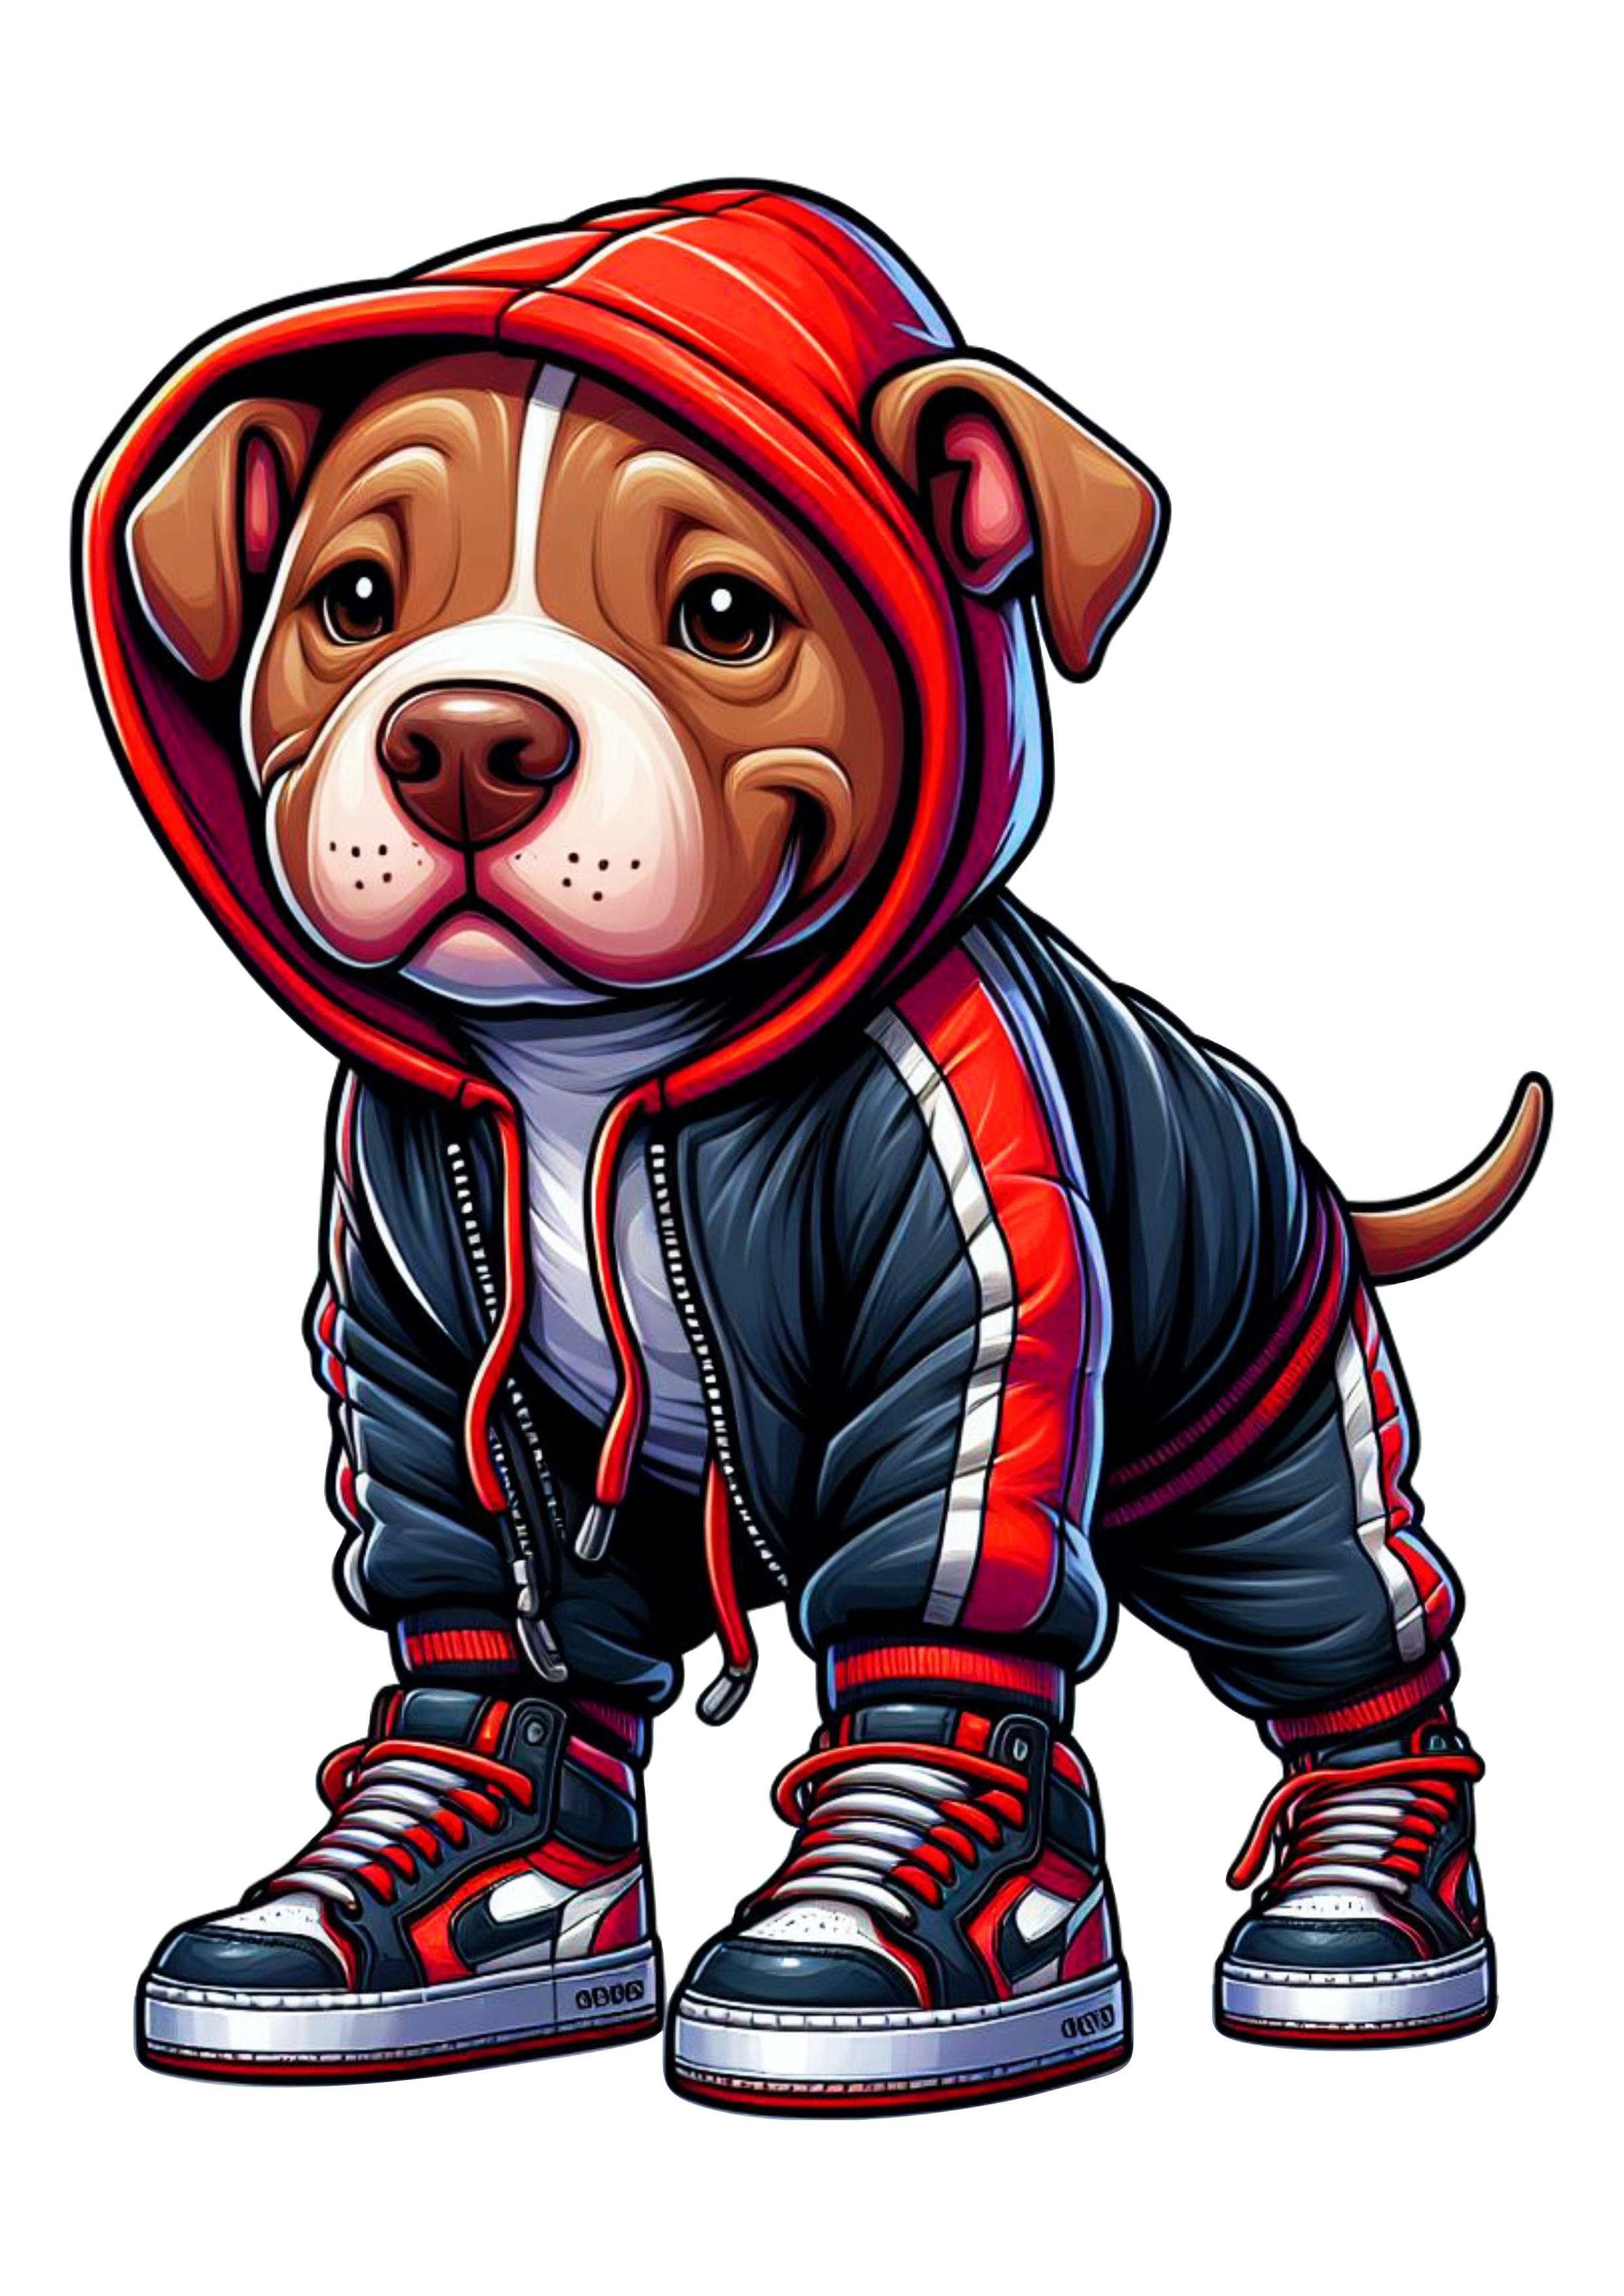 Pitbull cachorrinho de roupa de skatista desenho infantil blusão moletom vermelho png image ilustração artes gráficas